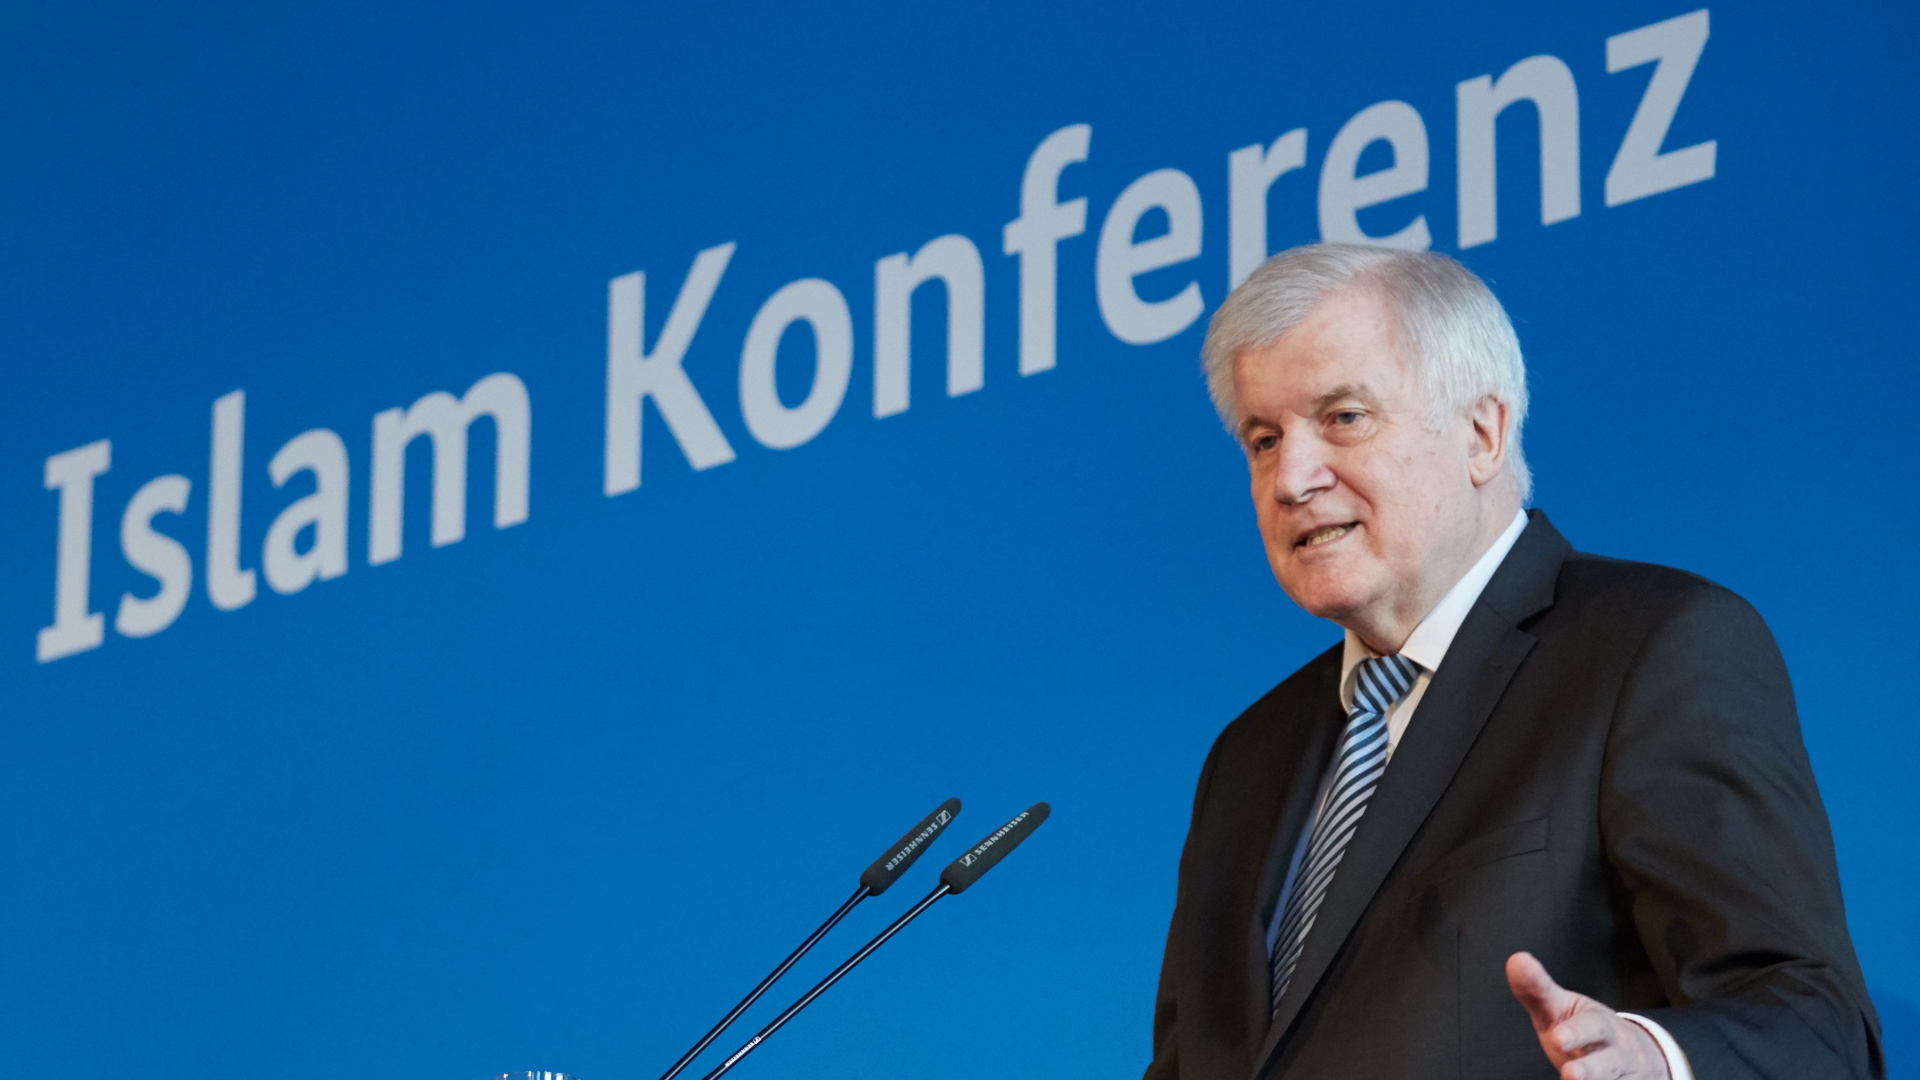 Innenminister Seehofer eröffnet die Deutsche Islamkonferenz | Bildquelle: HAYOUNG JEON/EPA-EFE/REX/Shutter